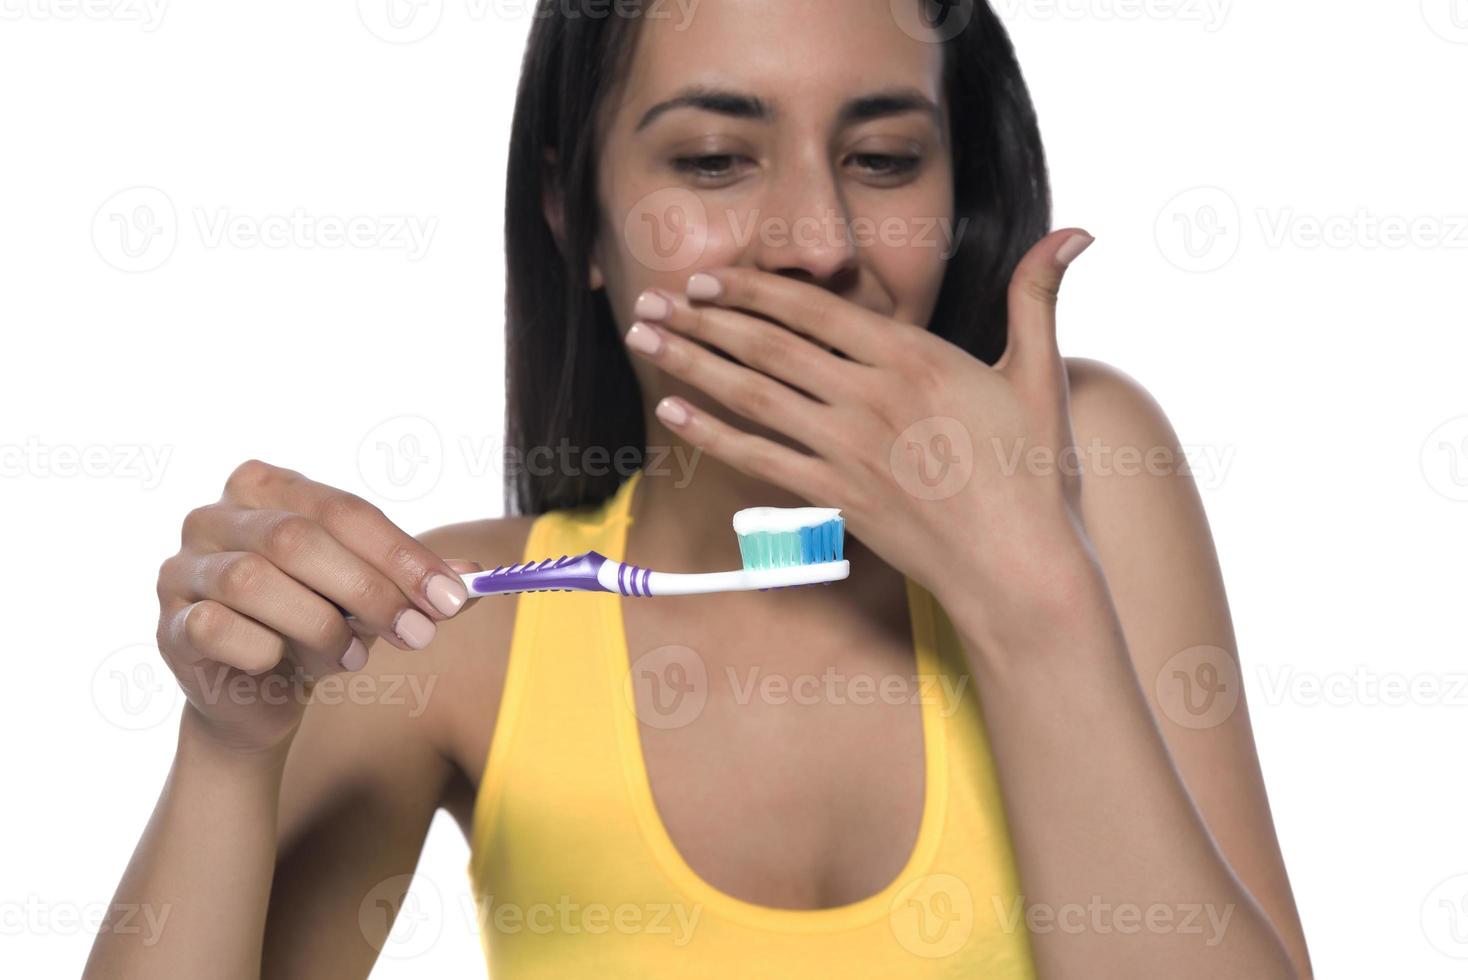 mulher jovem feliz com dentes saudáveis, segurando uma escova de dentes foto